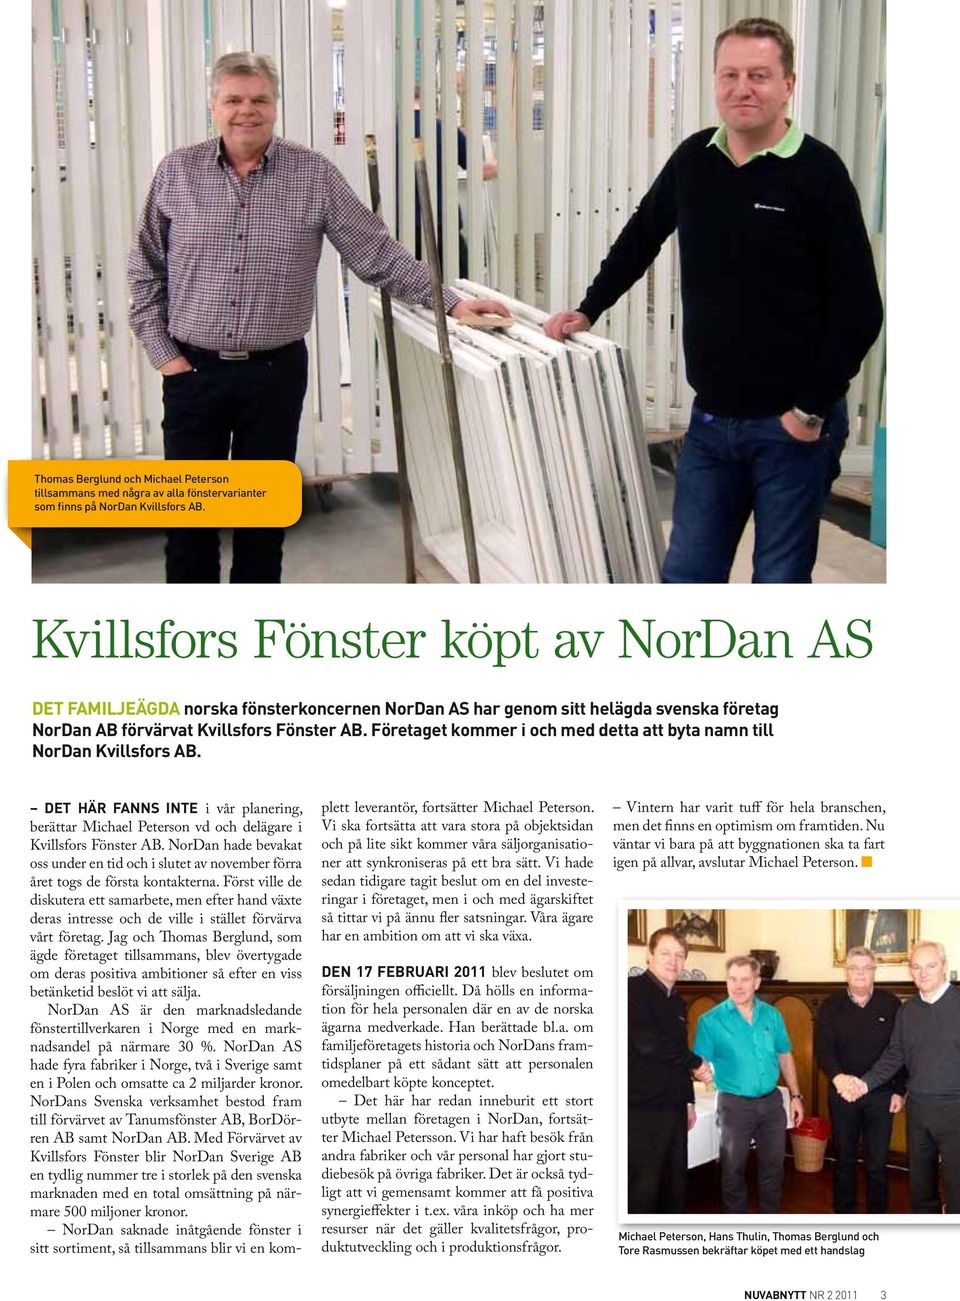 Företaget kommer i och med detta att byta namn till NorDan Kvillsfors AB. DET HÄR FANNS INTE i vår planering, berättar Michael Peterson vd och delägare i Kvillsfors Fönster AB.